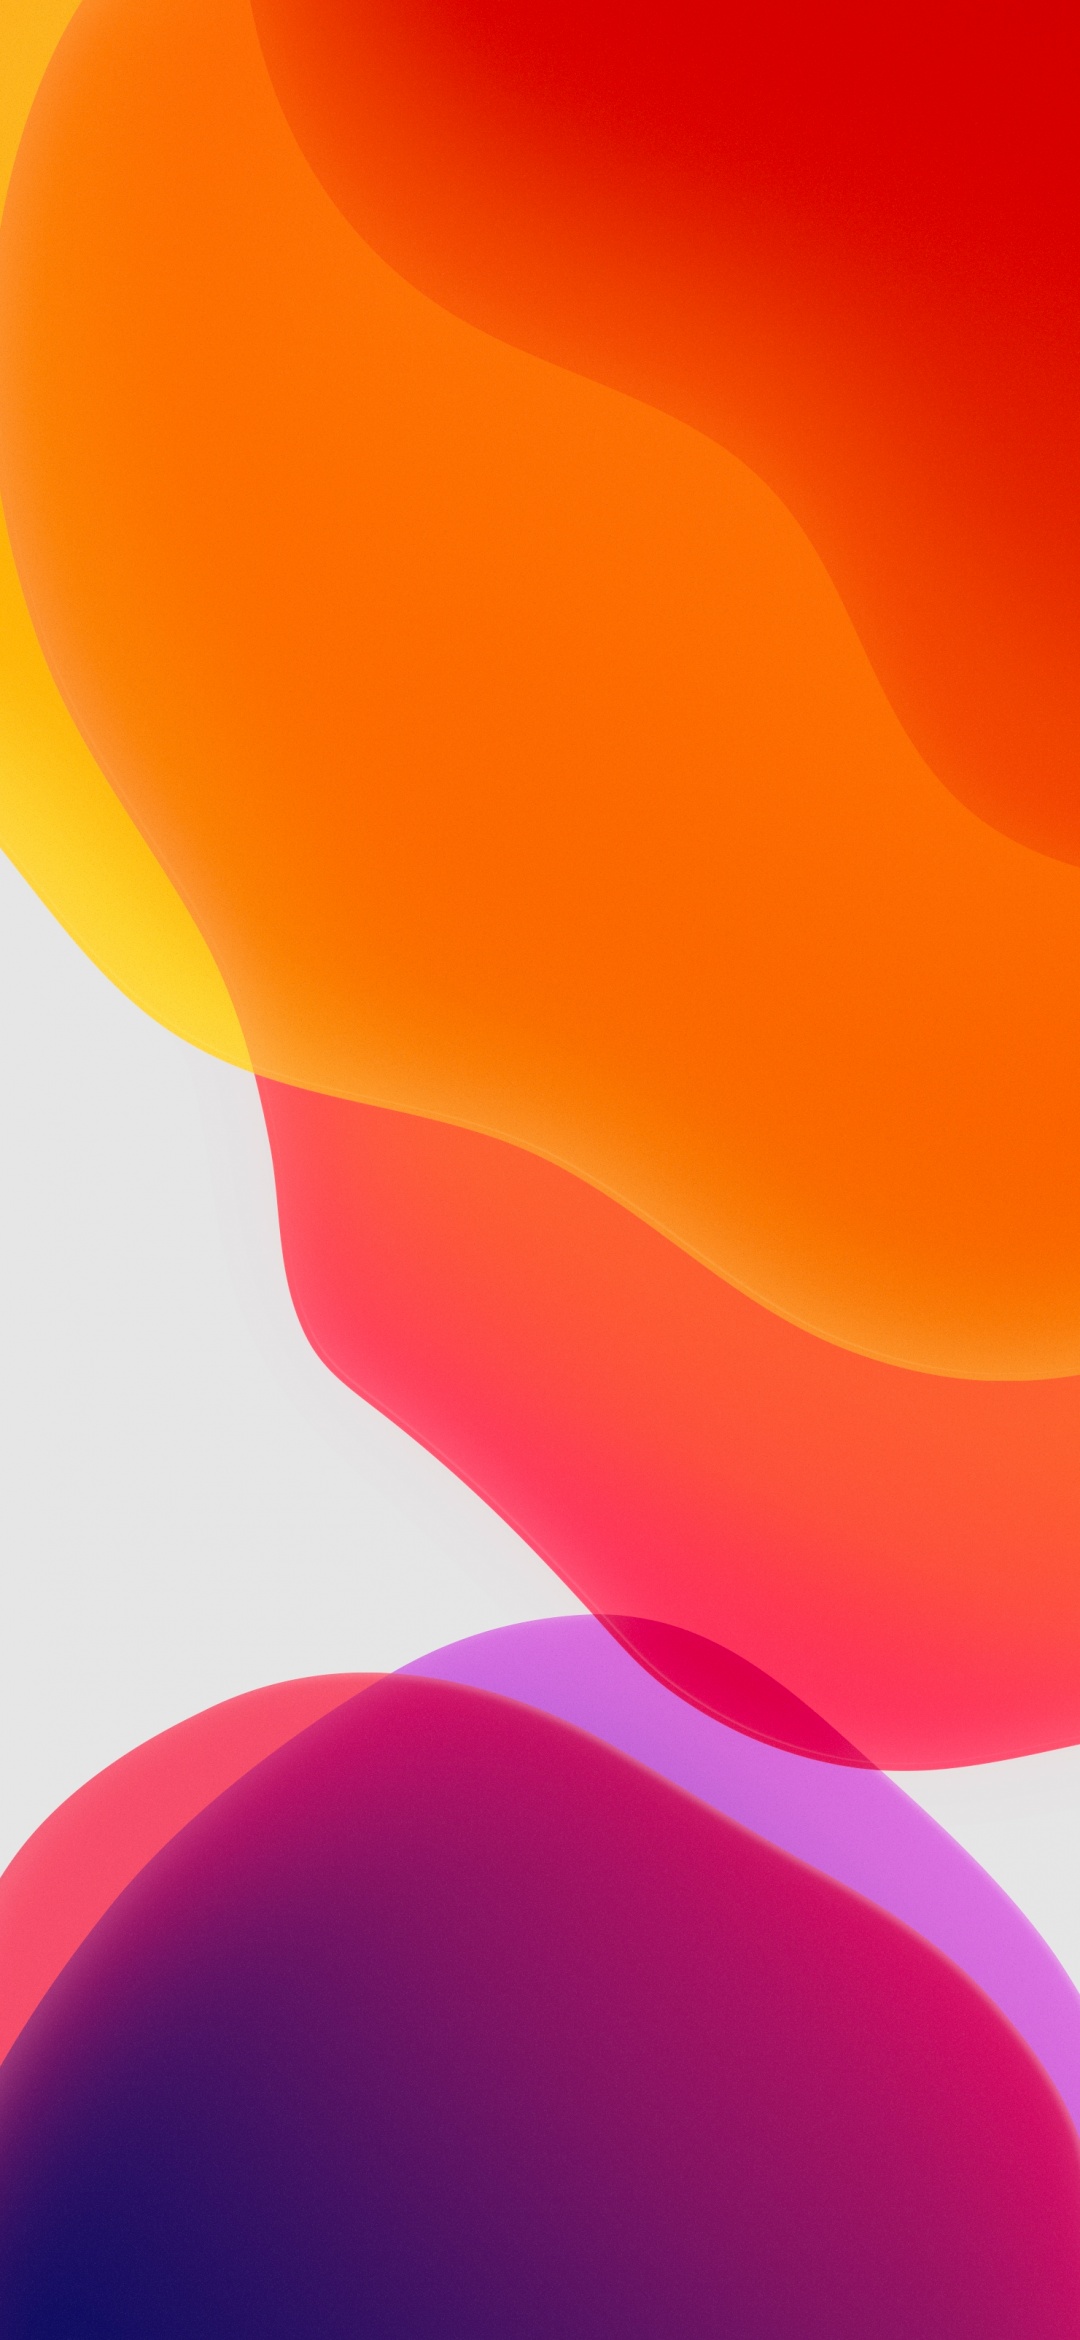 iPadOS Wallpaper 4K, Stock, Orange, White background, iPad, iOS 13